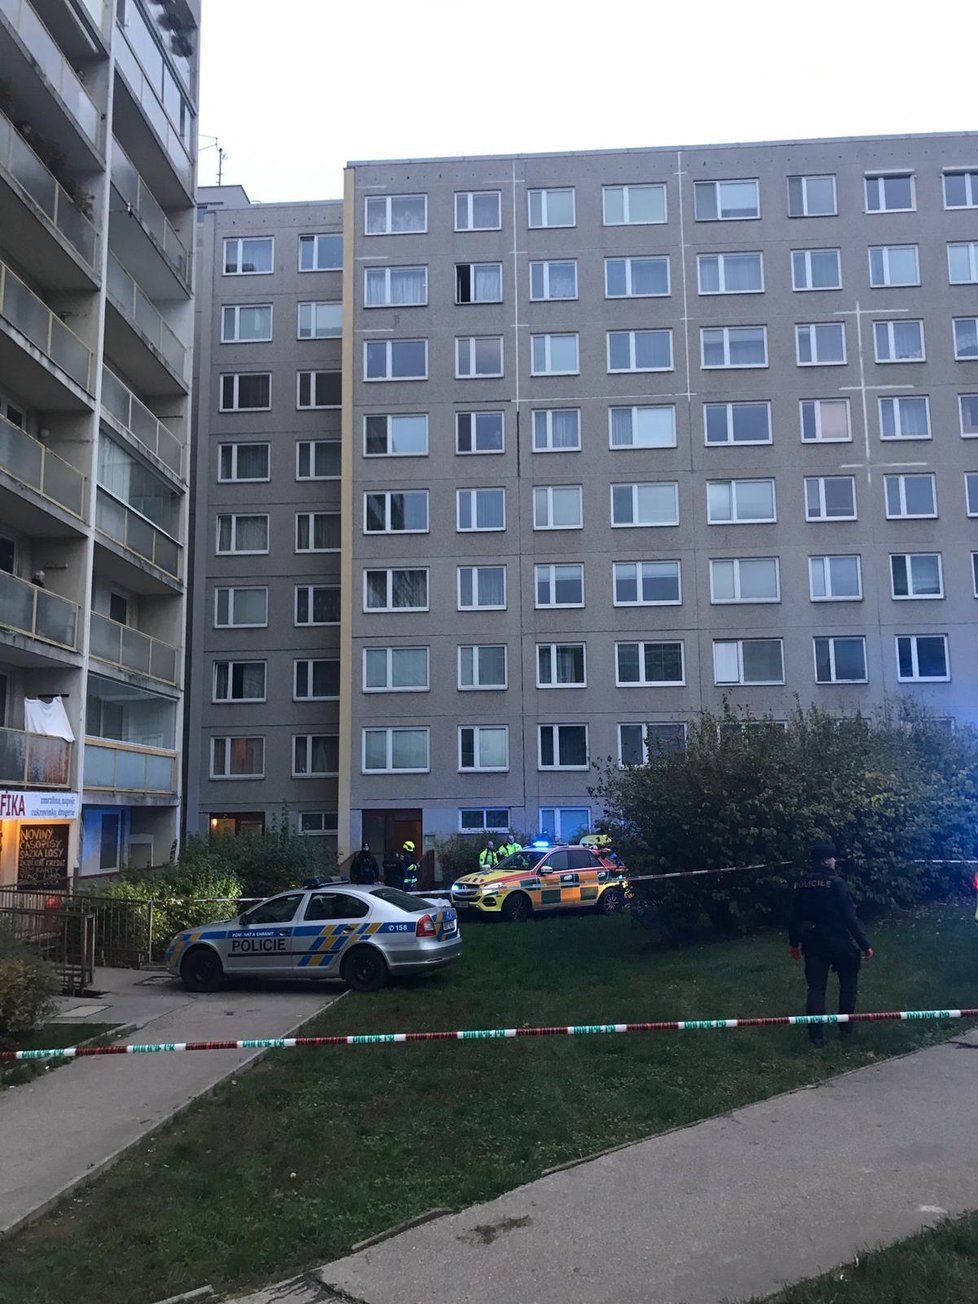 V Janského ulici zemřeli dva lidé poté, co se zřítili z okna. (11. 11. 2019)